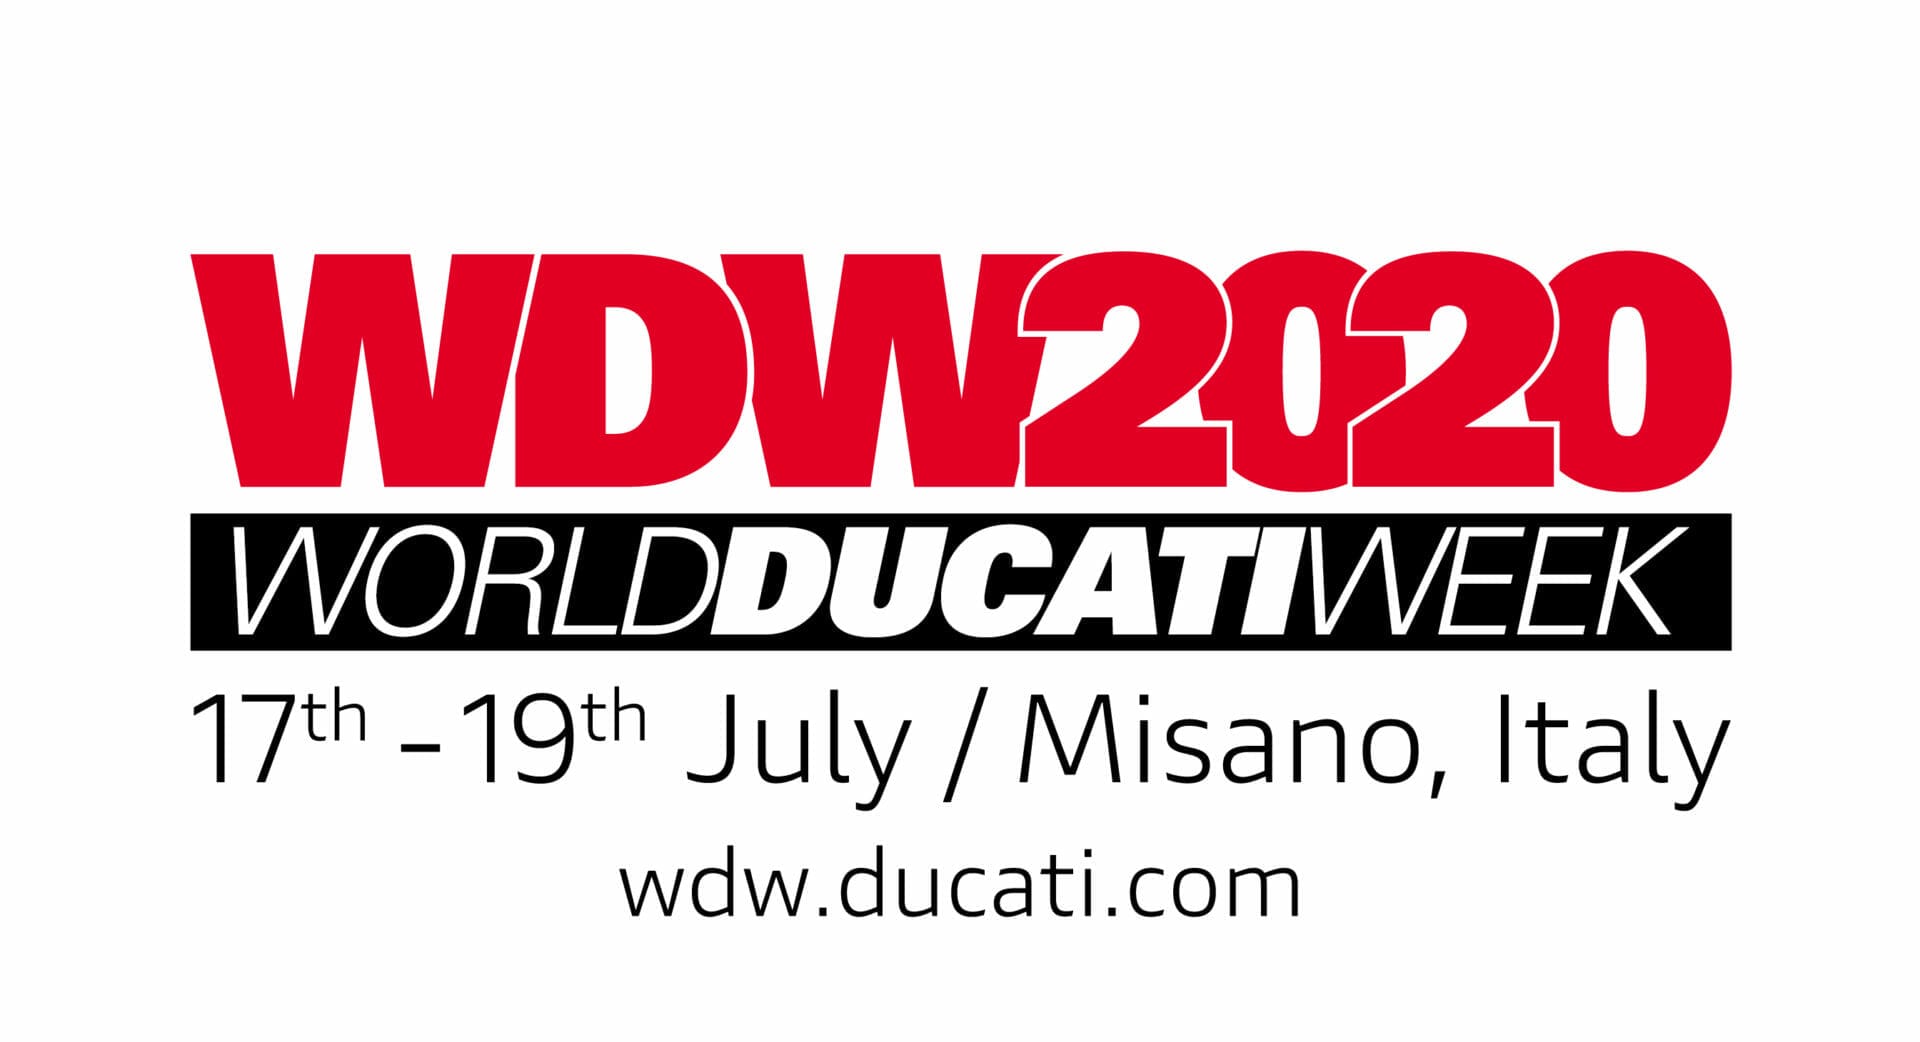 World Ducati Week 2020